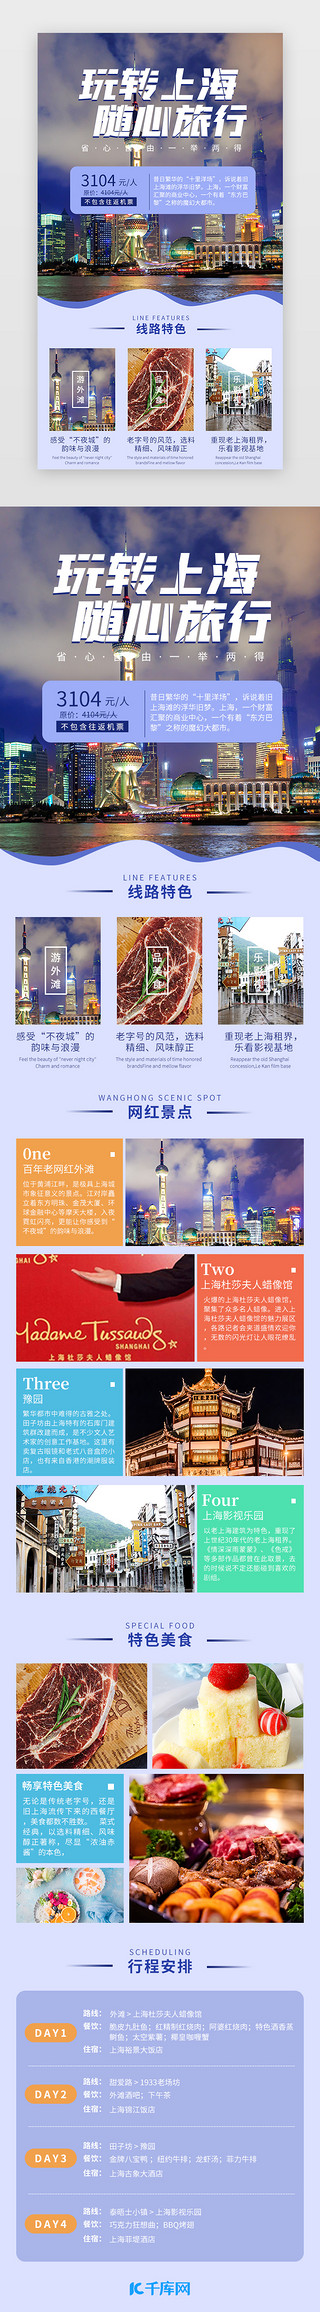 上海金山区小姐资源63.7.8.79.3.9薇UI设计素材_玩转上海 随心旅行 蓝色简约景点介绍H5